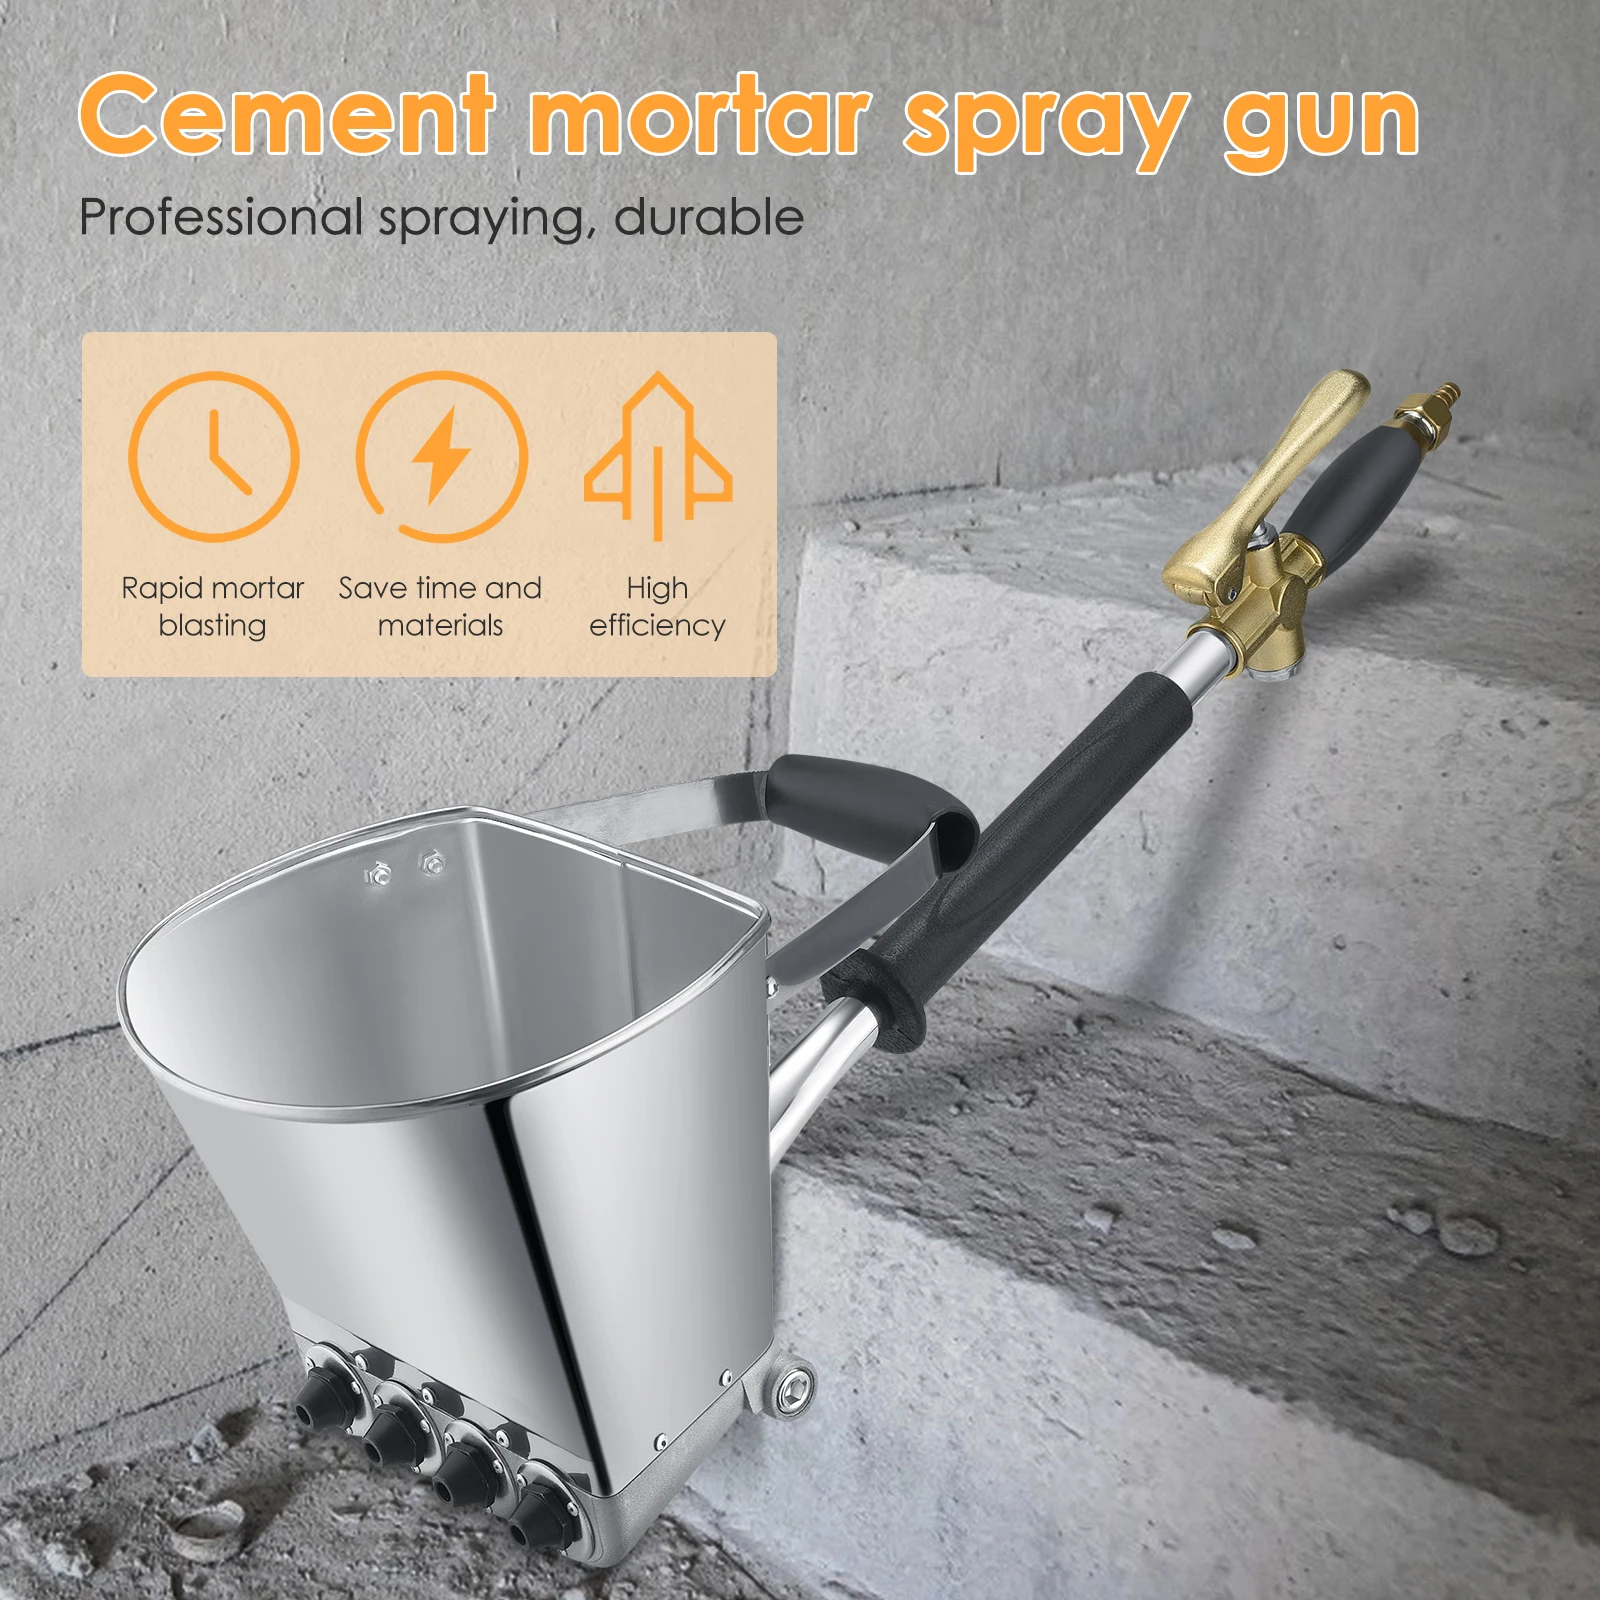 4 Jet Wall Mortar Gun Cement Gun Sprayer Plaster Hopper Painting Concrete Tool 